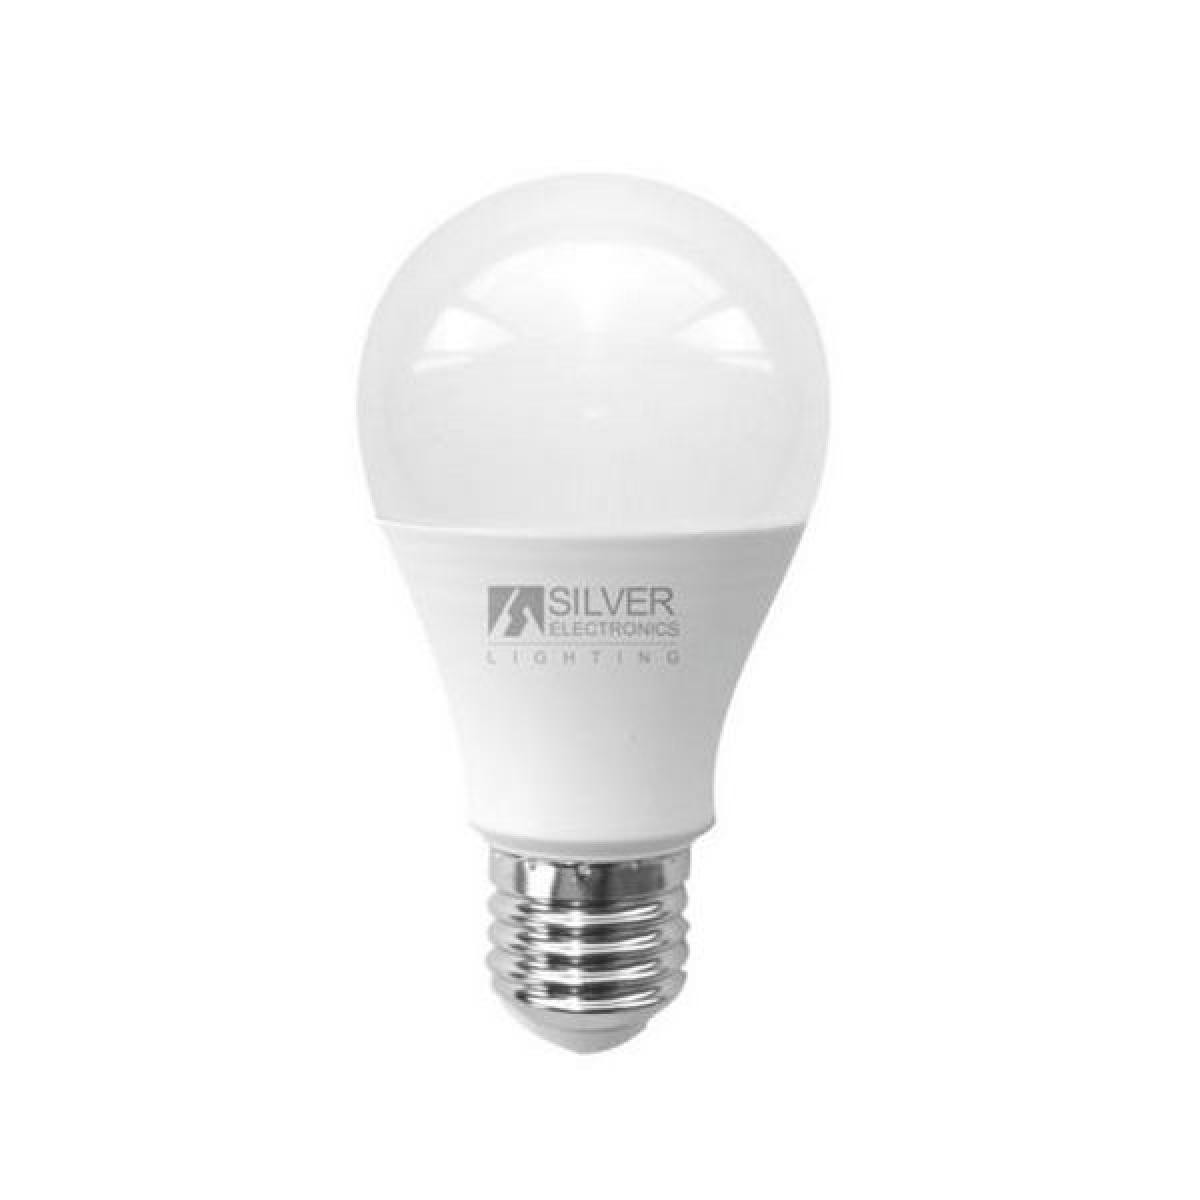 Totalcadeau - Ampoule LED Sphérique E27 15W Lumière chaude Choisissez votre option - 6000K pas cher - Ampoules LED